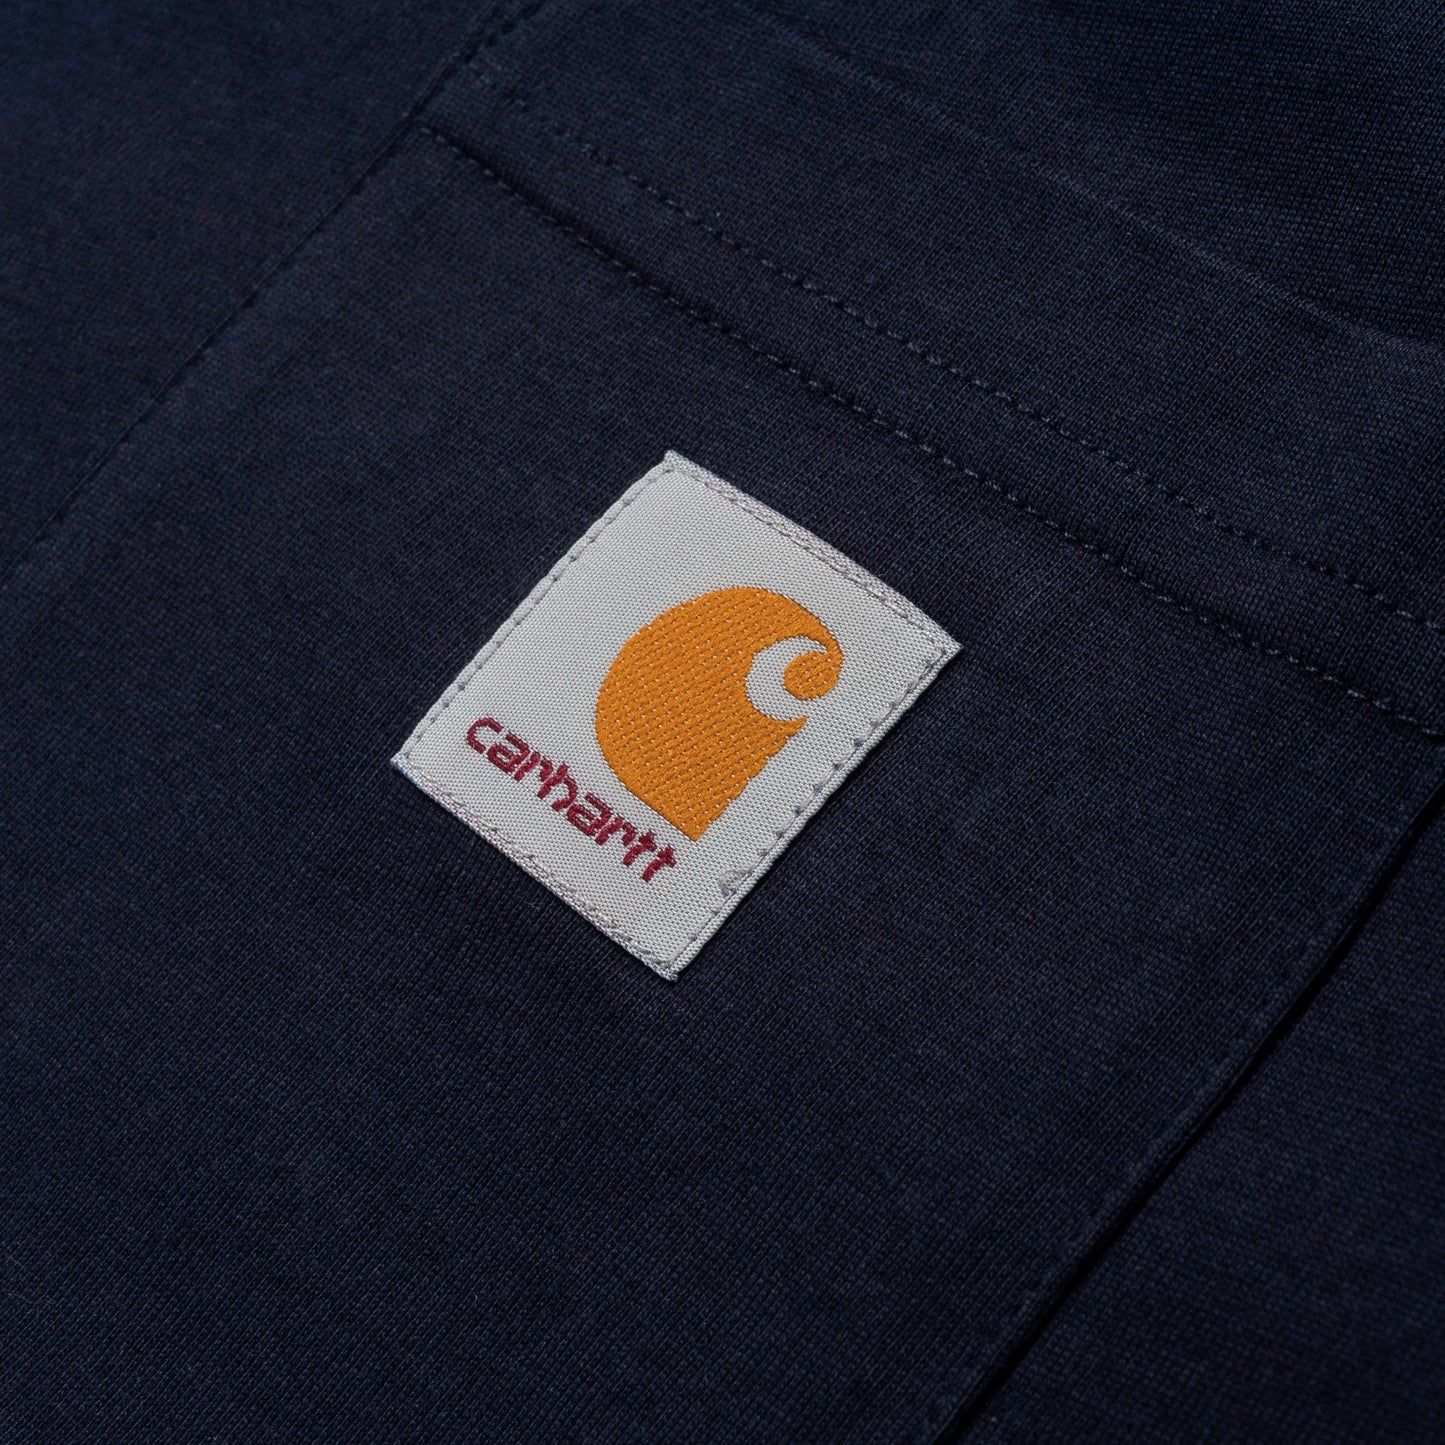 Carhartt WIP Pocket T-Shirt Dark Navy. Foto de detalhe do bolso.